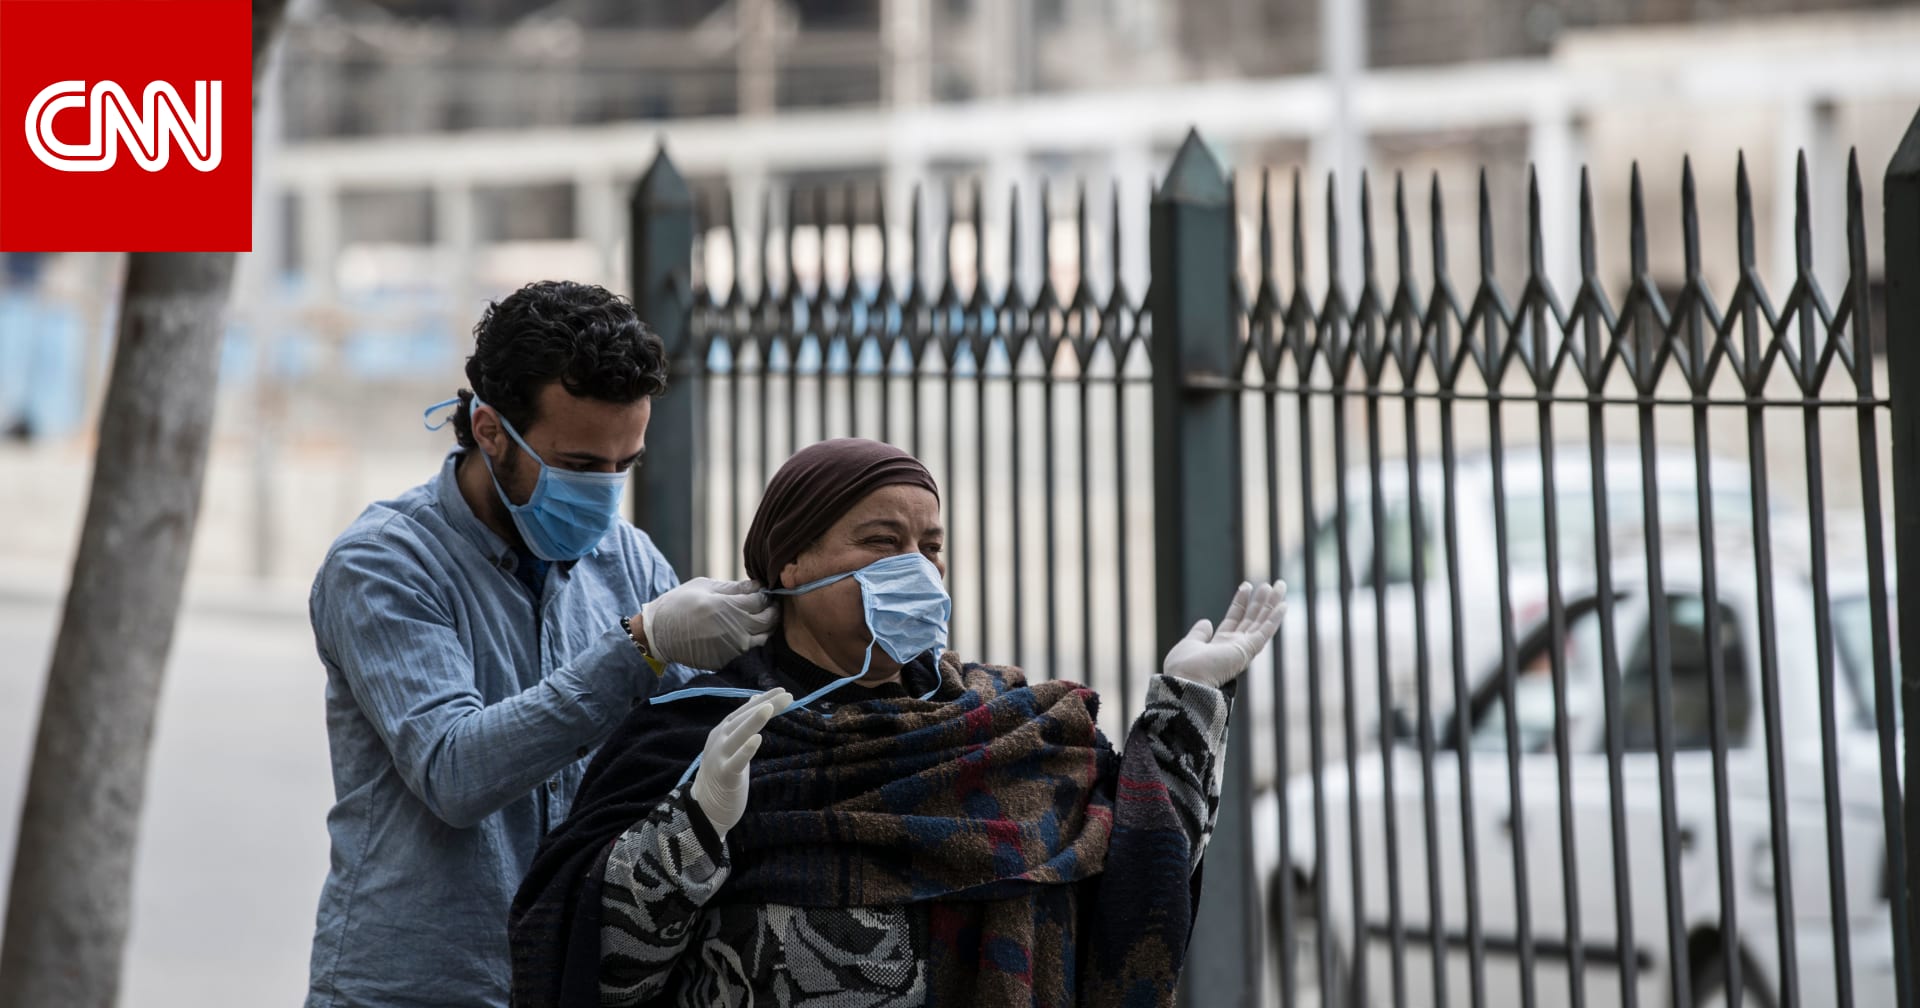 مصر تسجل أعلى معدل إصابات بفيروس كورونا بيوم واحد وإجمالي الوفيات 52 - CNN Arabic